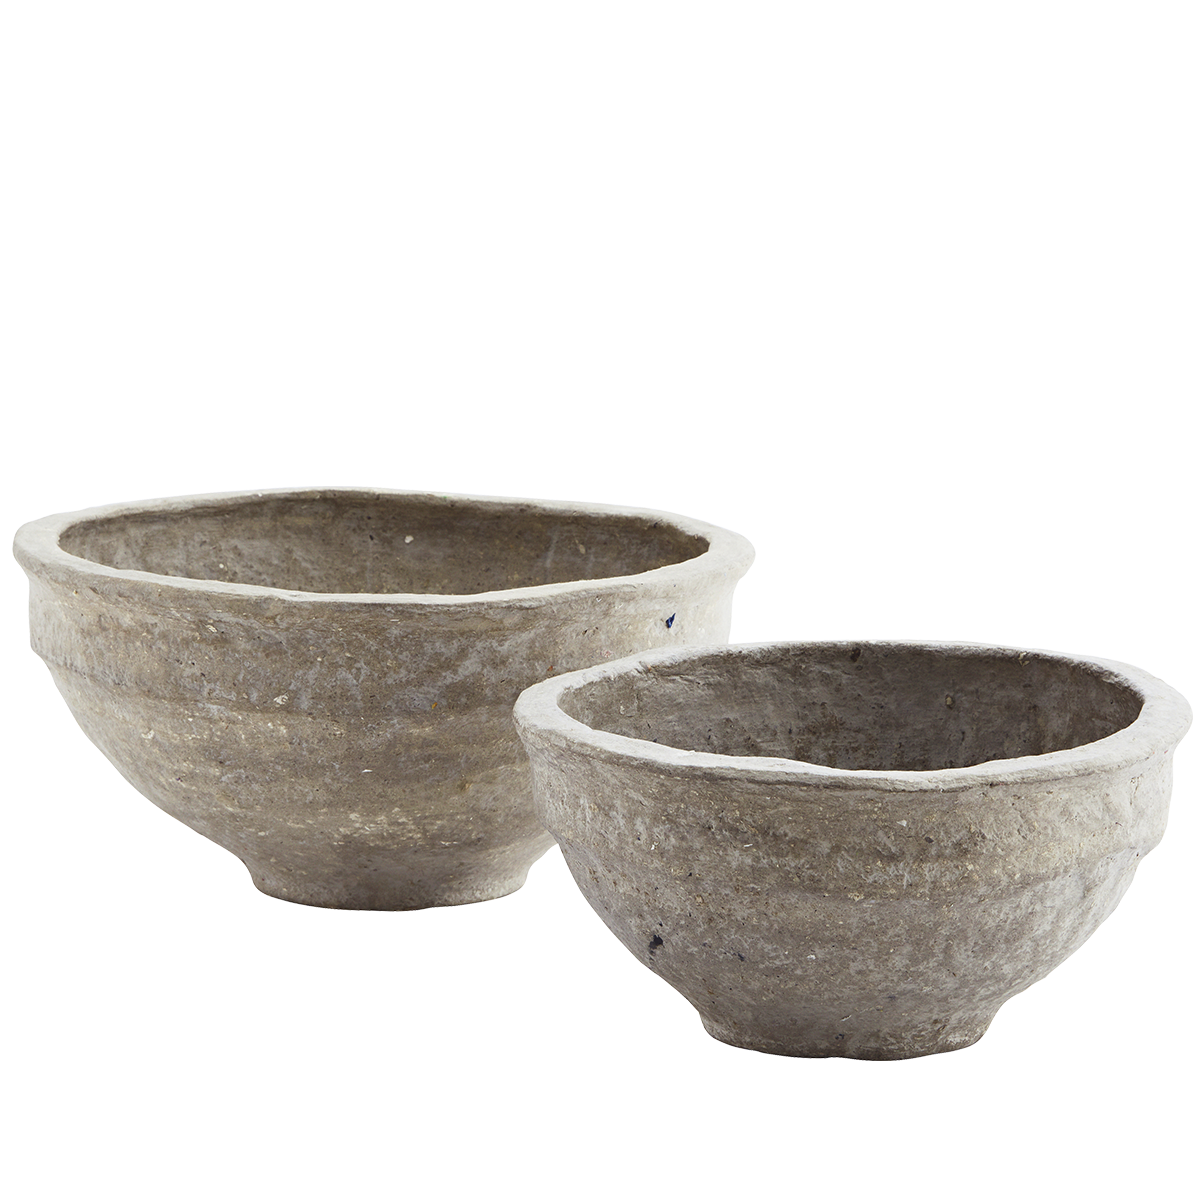 Handmade paper mache bowls